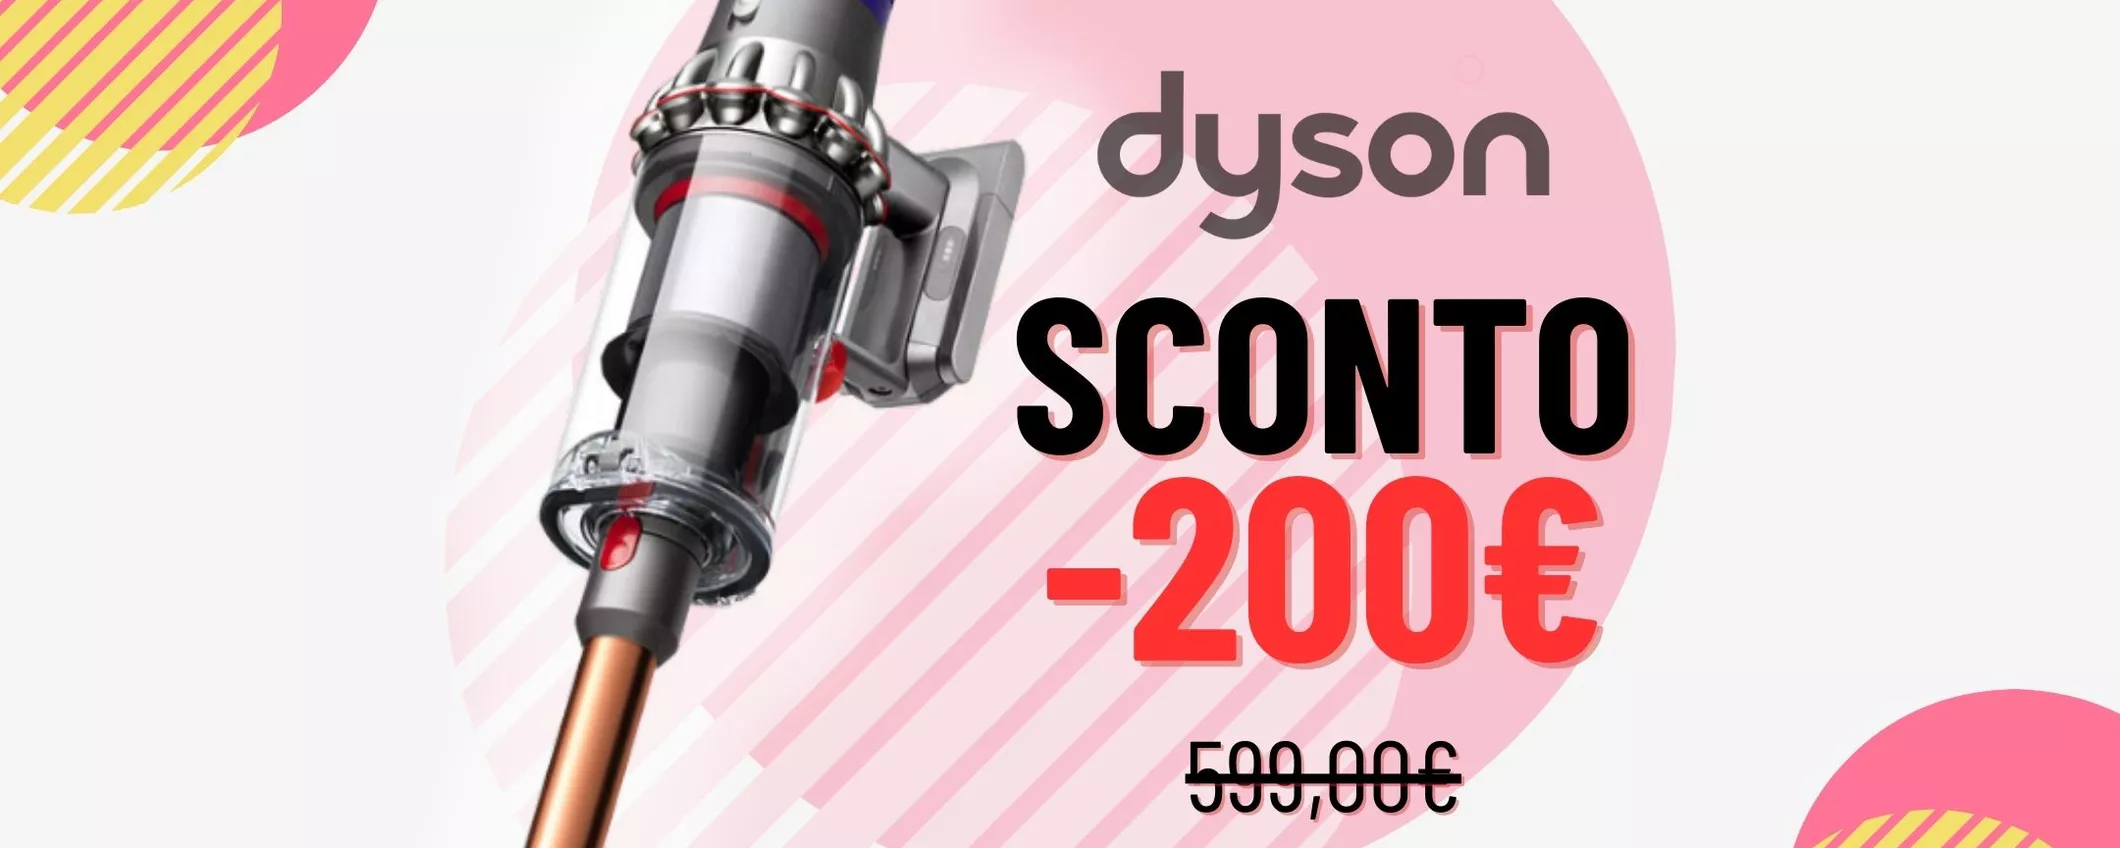 200€ DI SCONTO: Dyson Cyclone V10 ti aspetta oggi su eBay!